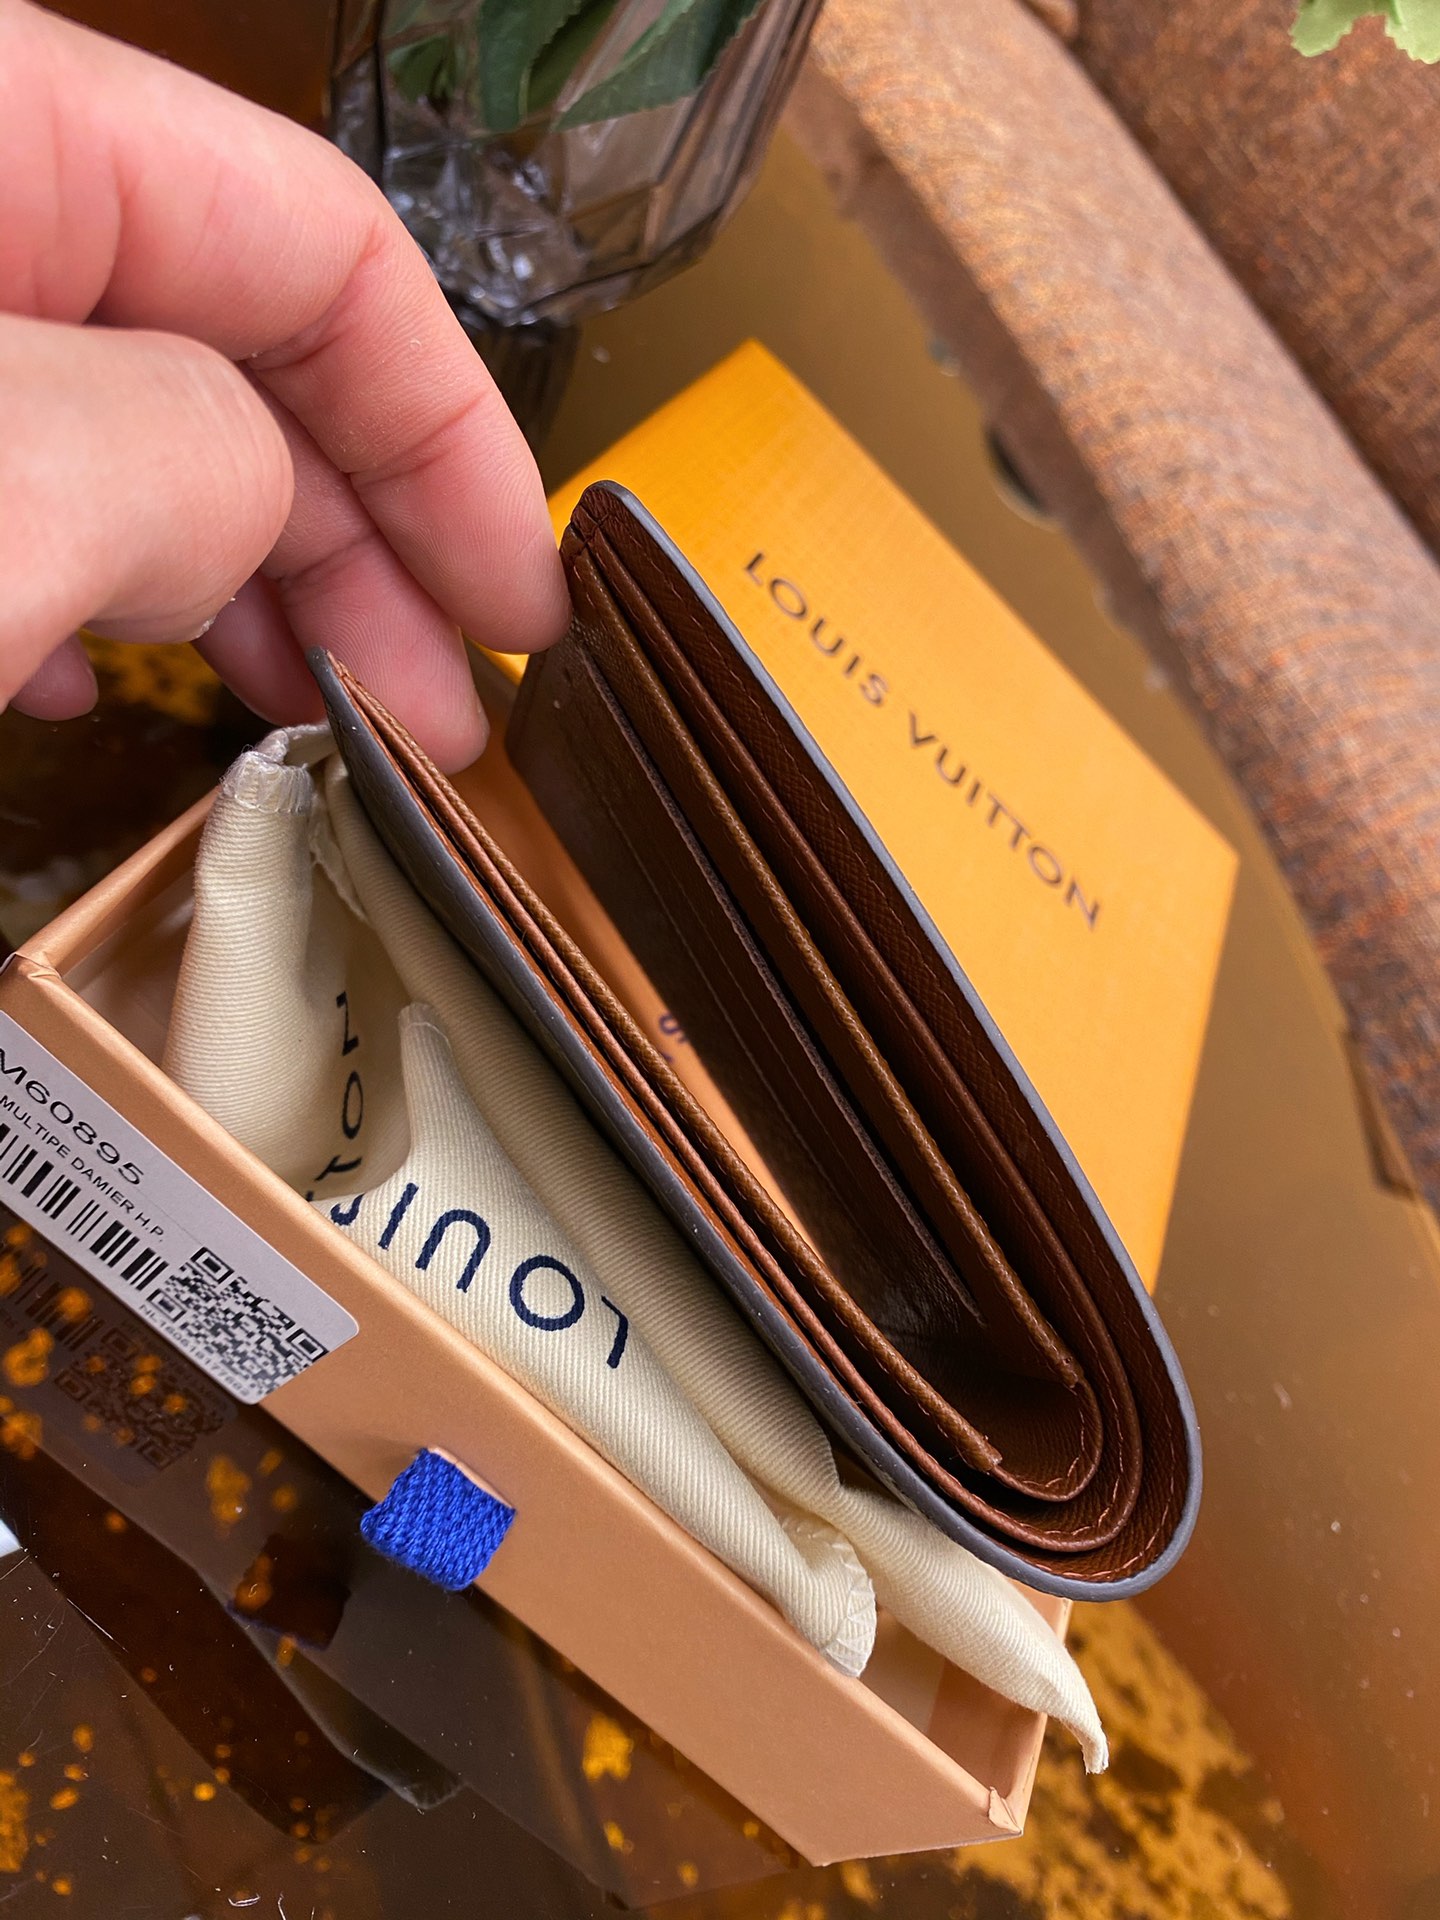 Louis Vuitton Multiple Monogram Men's Wallet